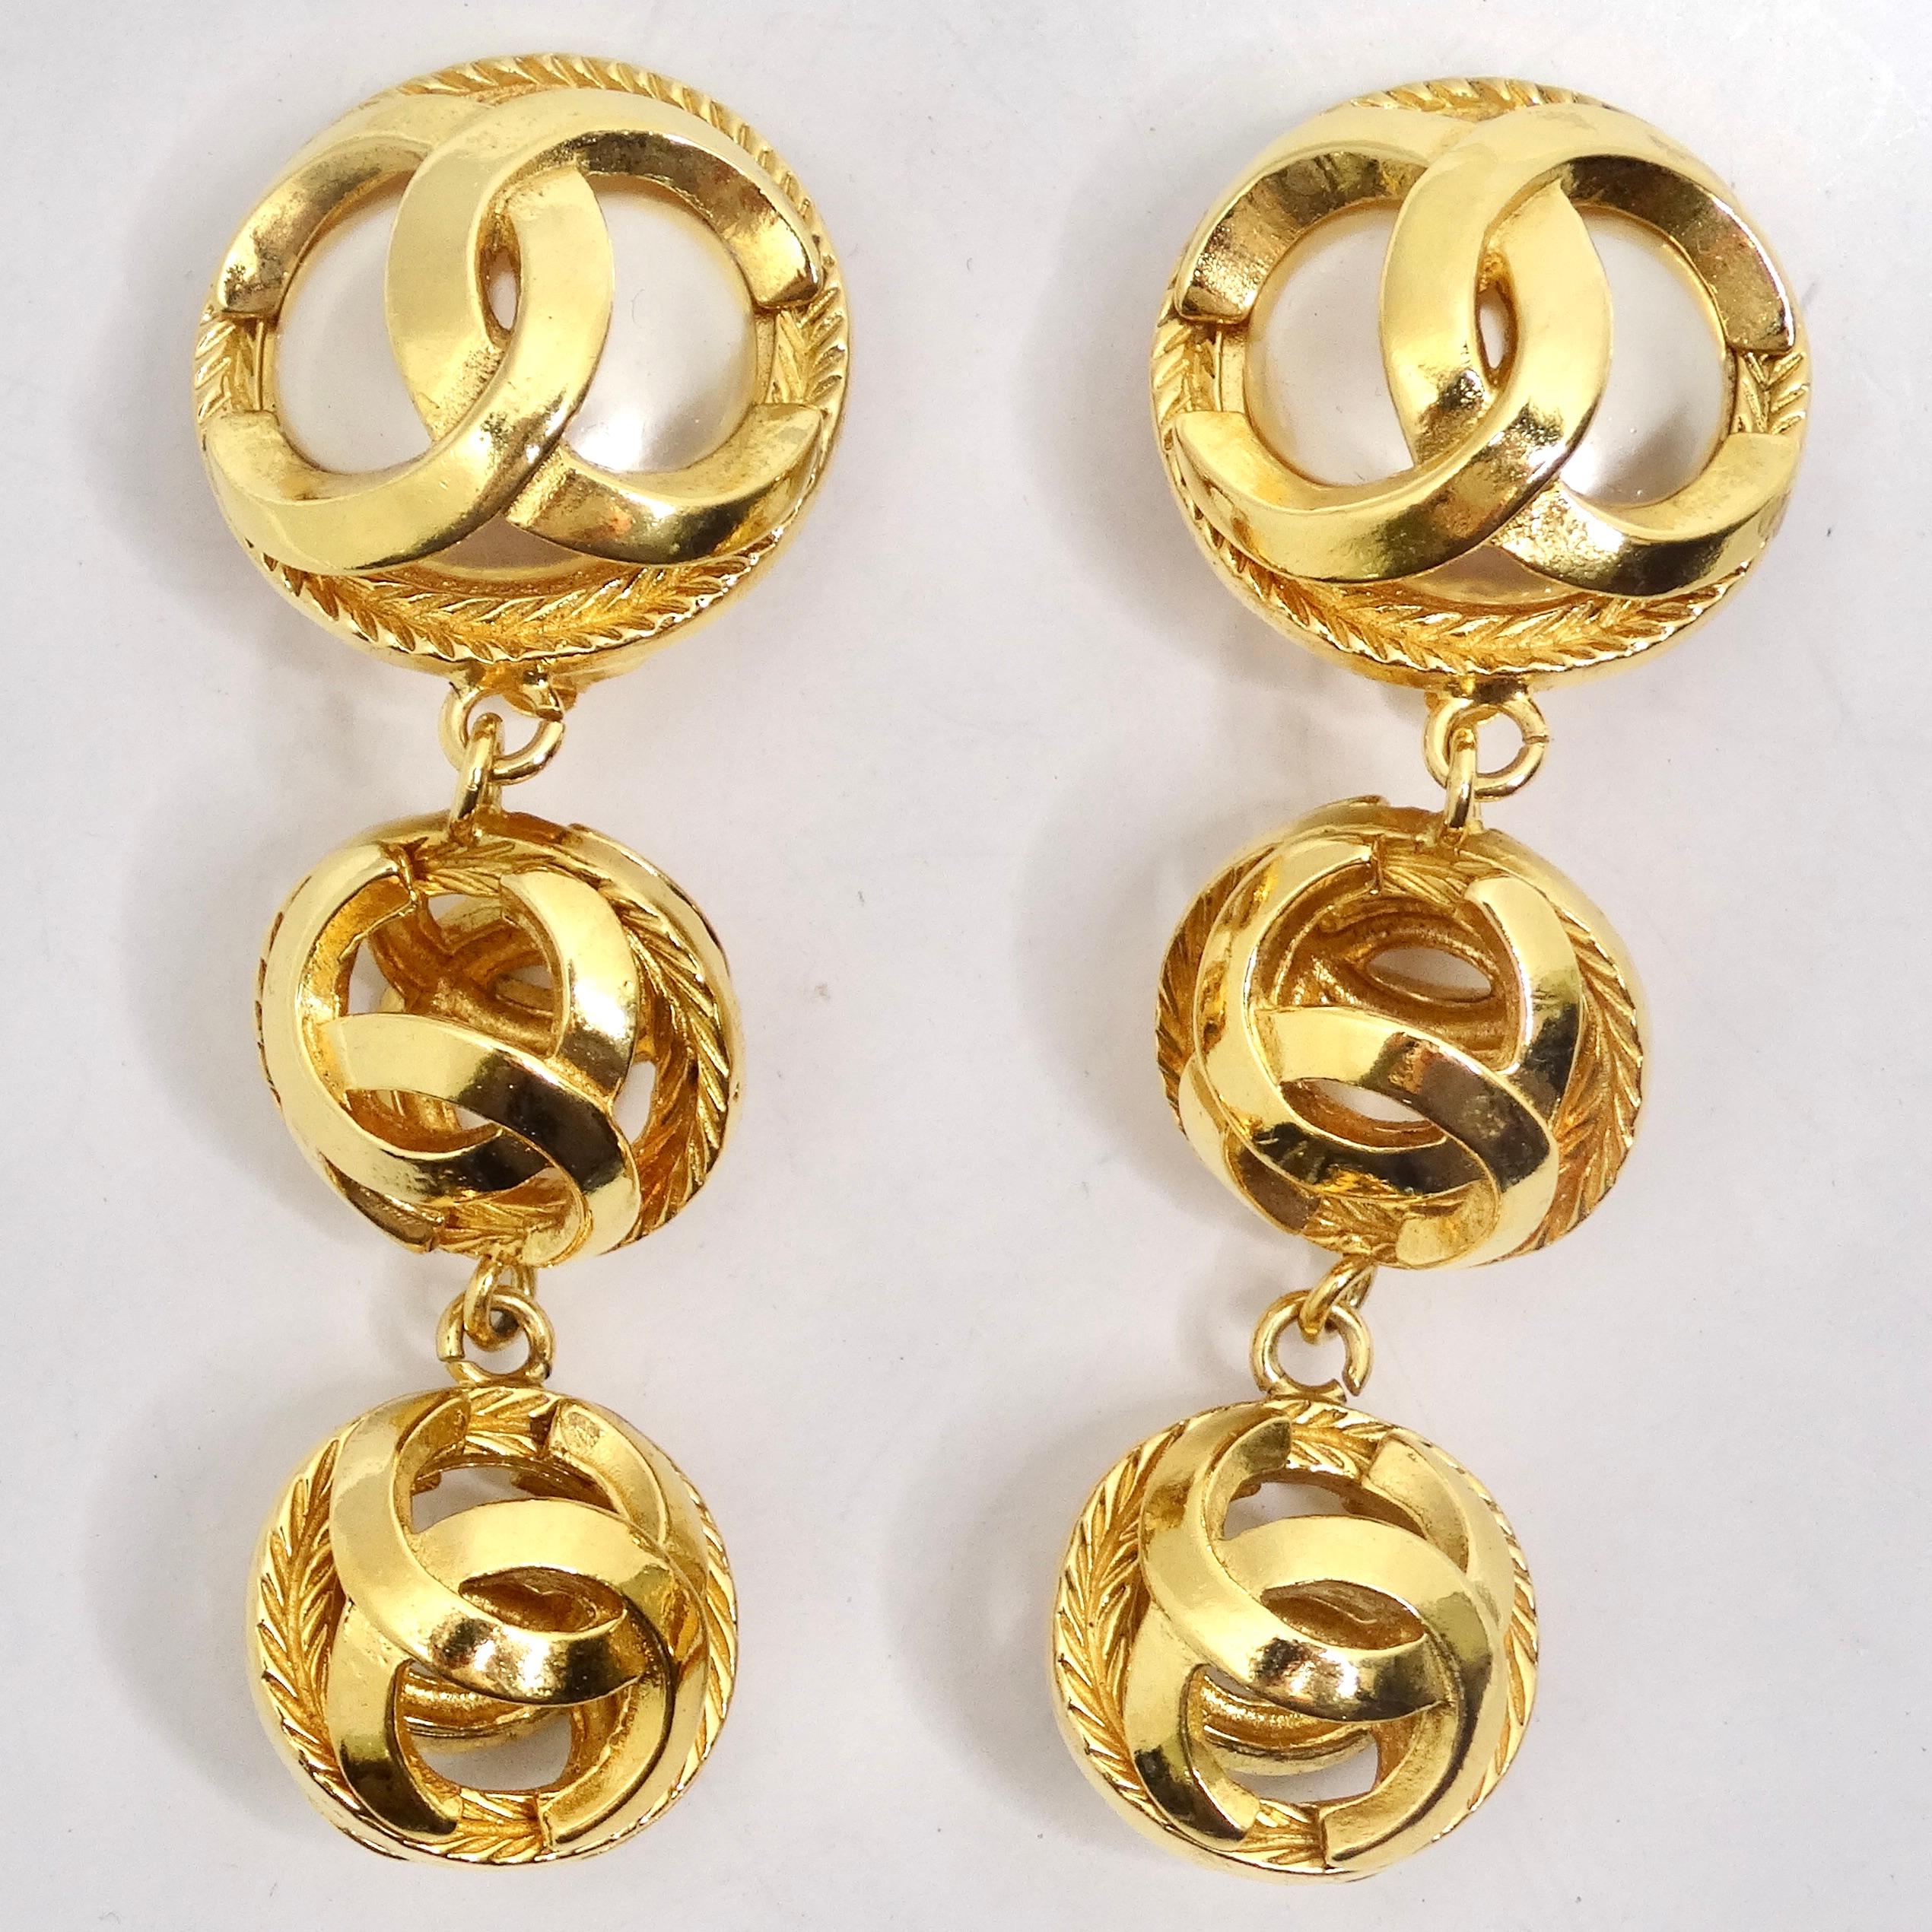 Voici une paire de boucles d'oreilles exquises des années 1980, les boucles d'oreilles Chanel en perles ton or. Ces boucles d'oreilles présentent la combinaison parfaite d'éléments de design emblématiques de Chanel, ce qui en fait un must pour